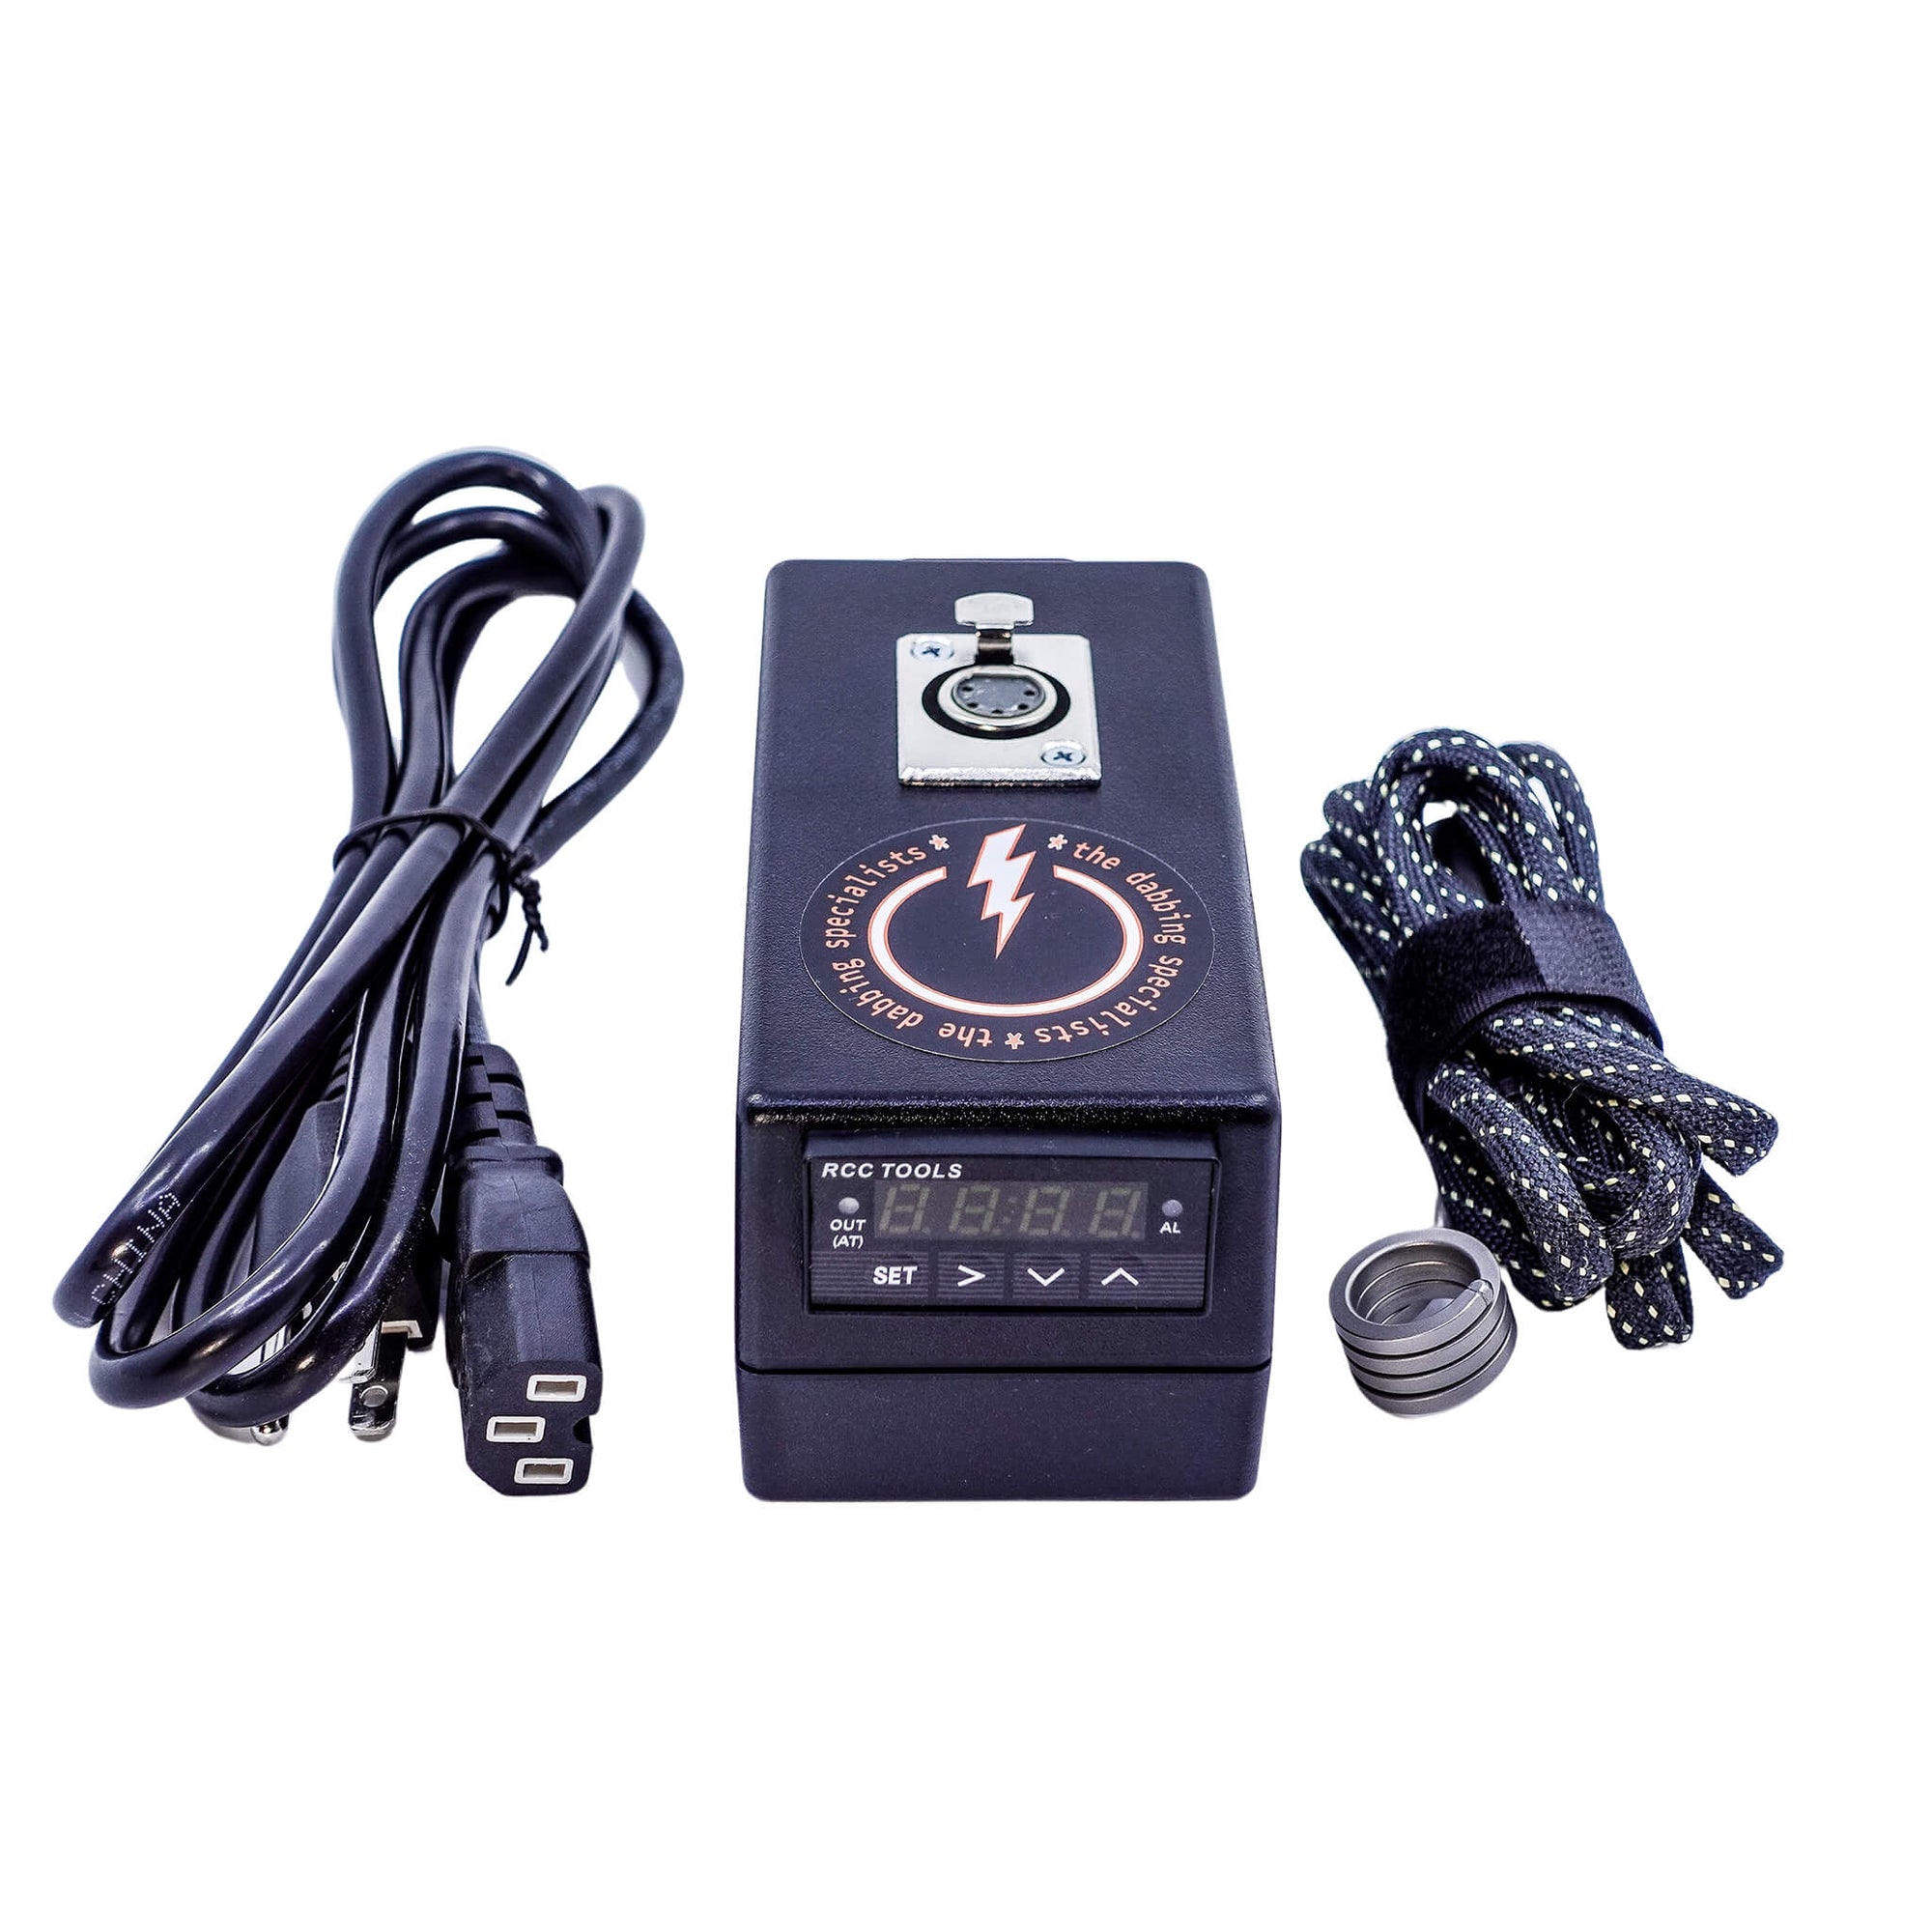 Portable BlackBar eNail | Complete eNail Kit View 16mm Coil Heater | Dabbing Warehouse